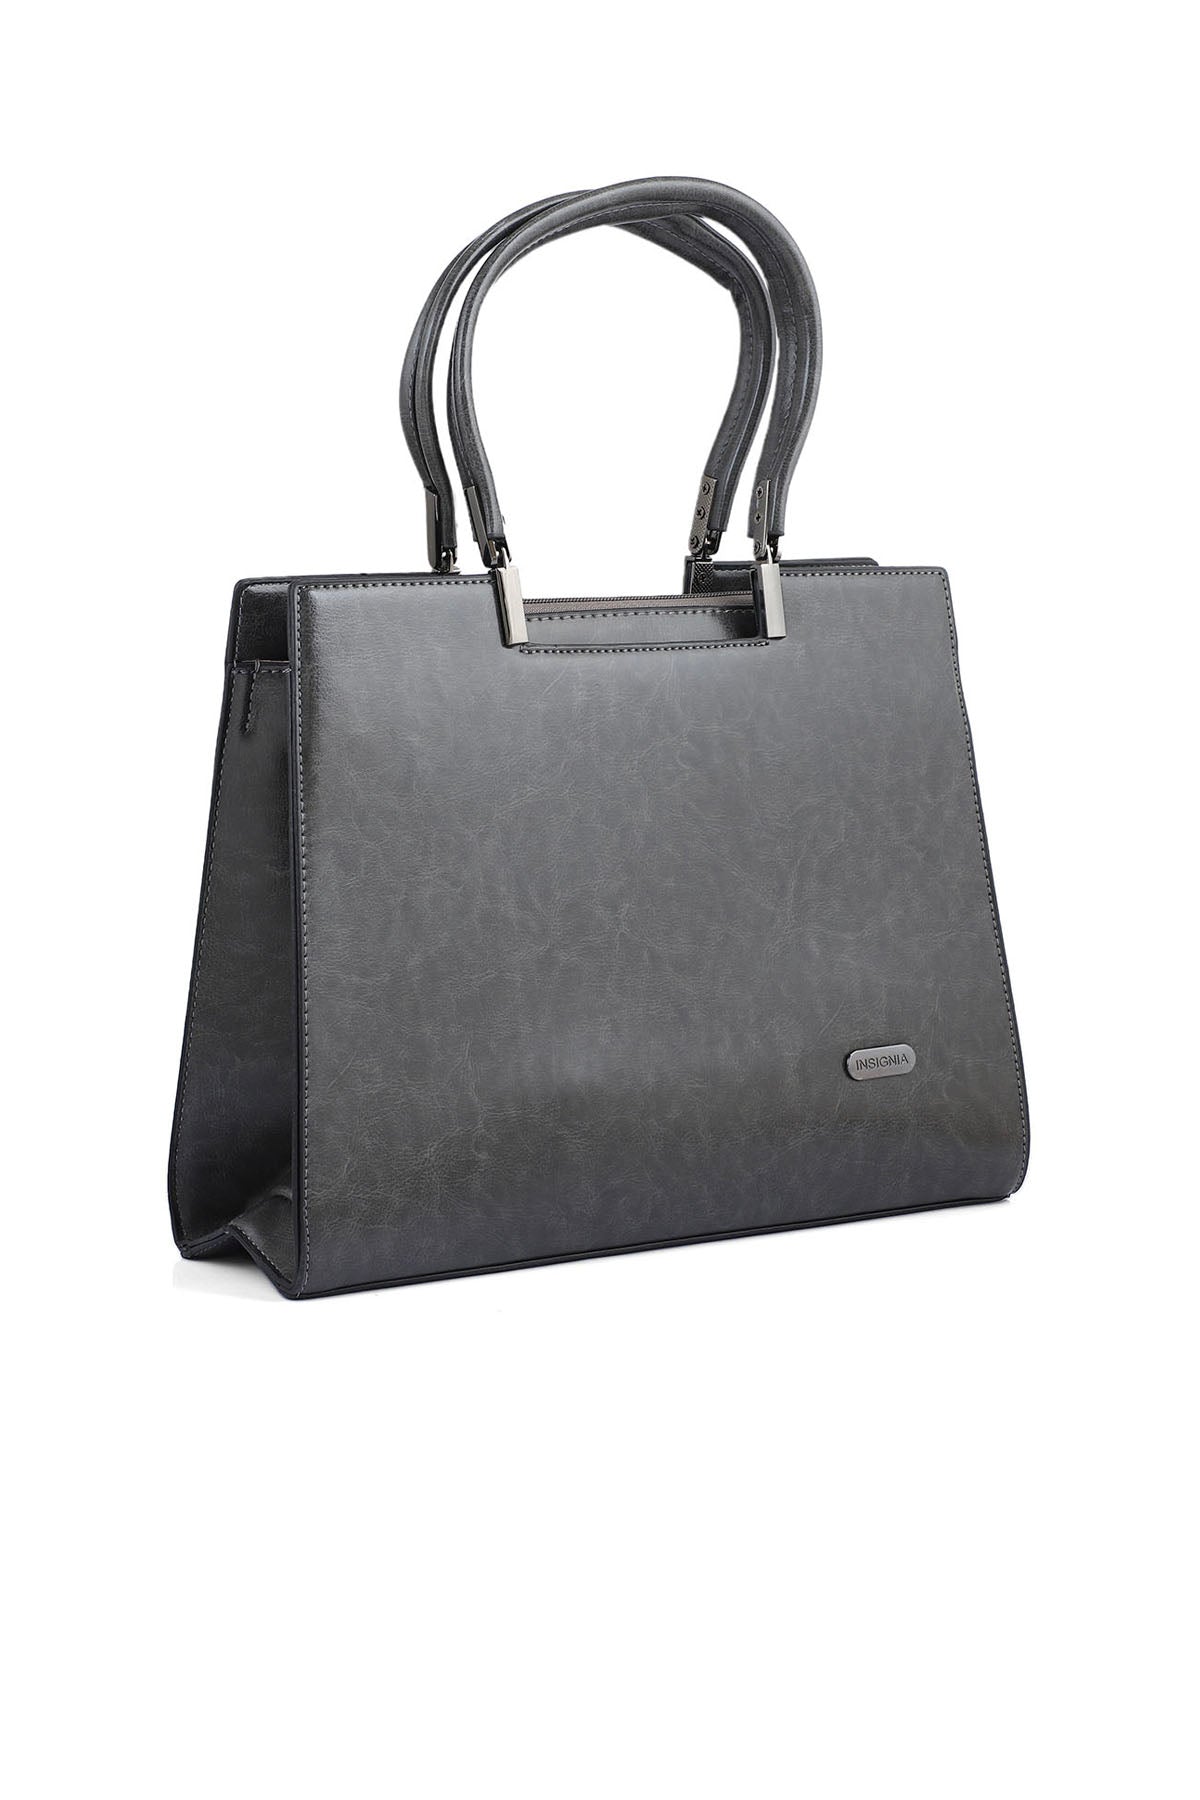 Formal Tote Hand Bags B14967-Grey